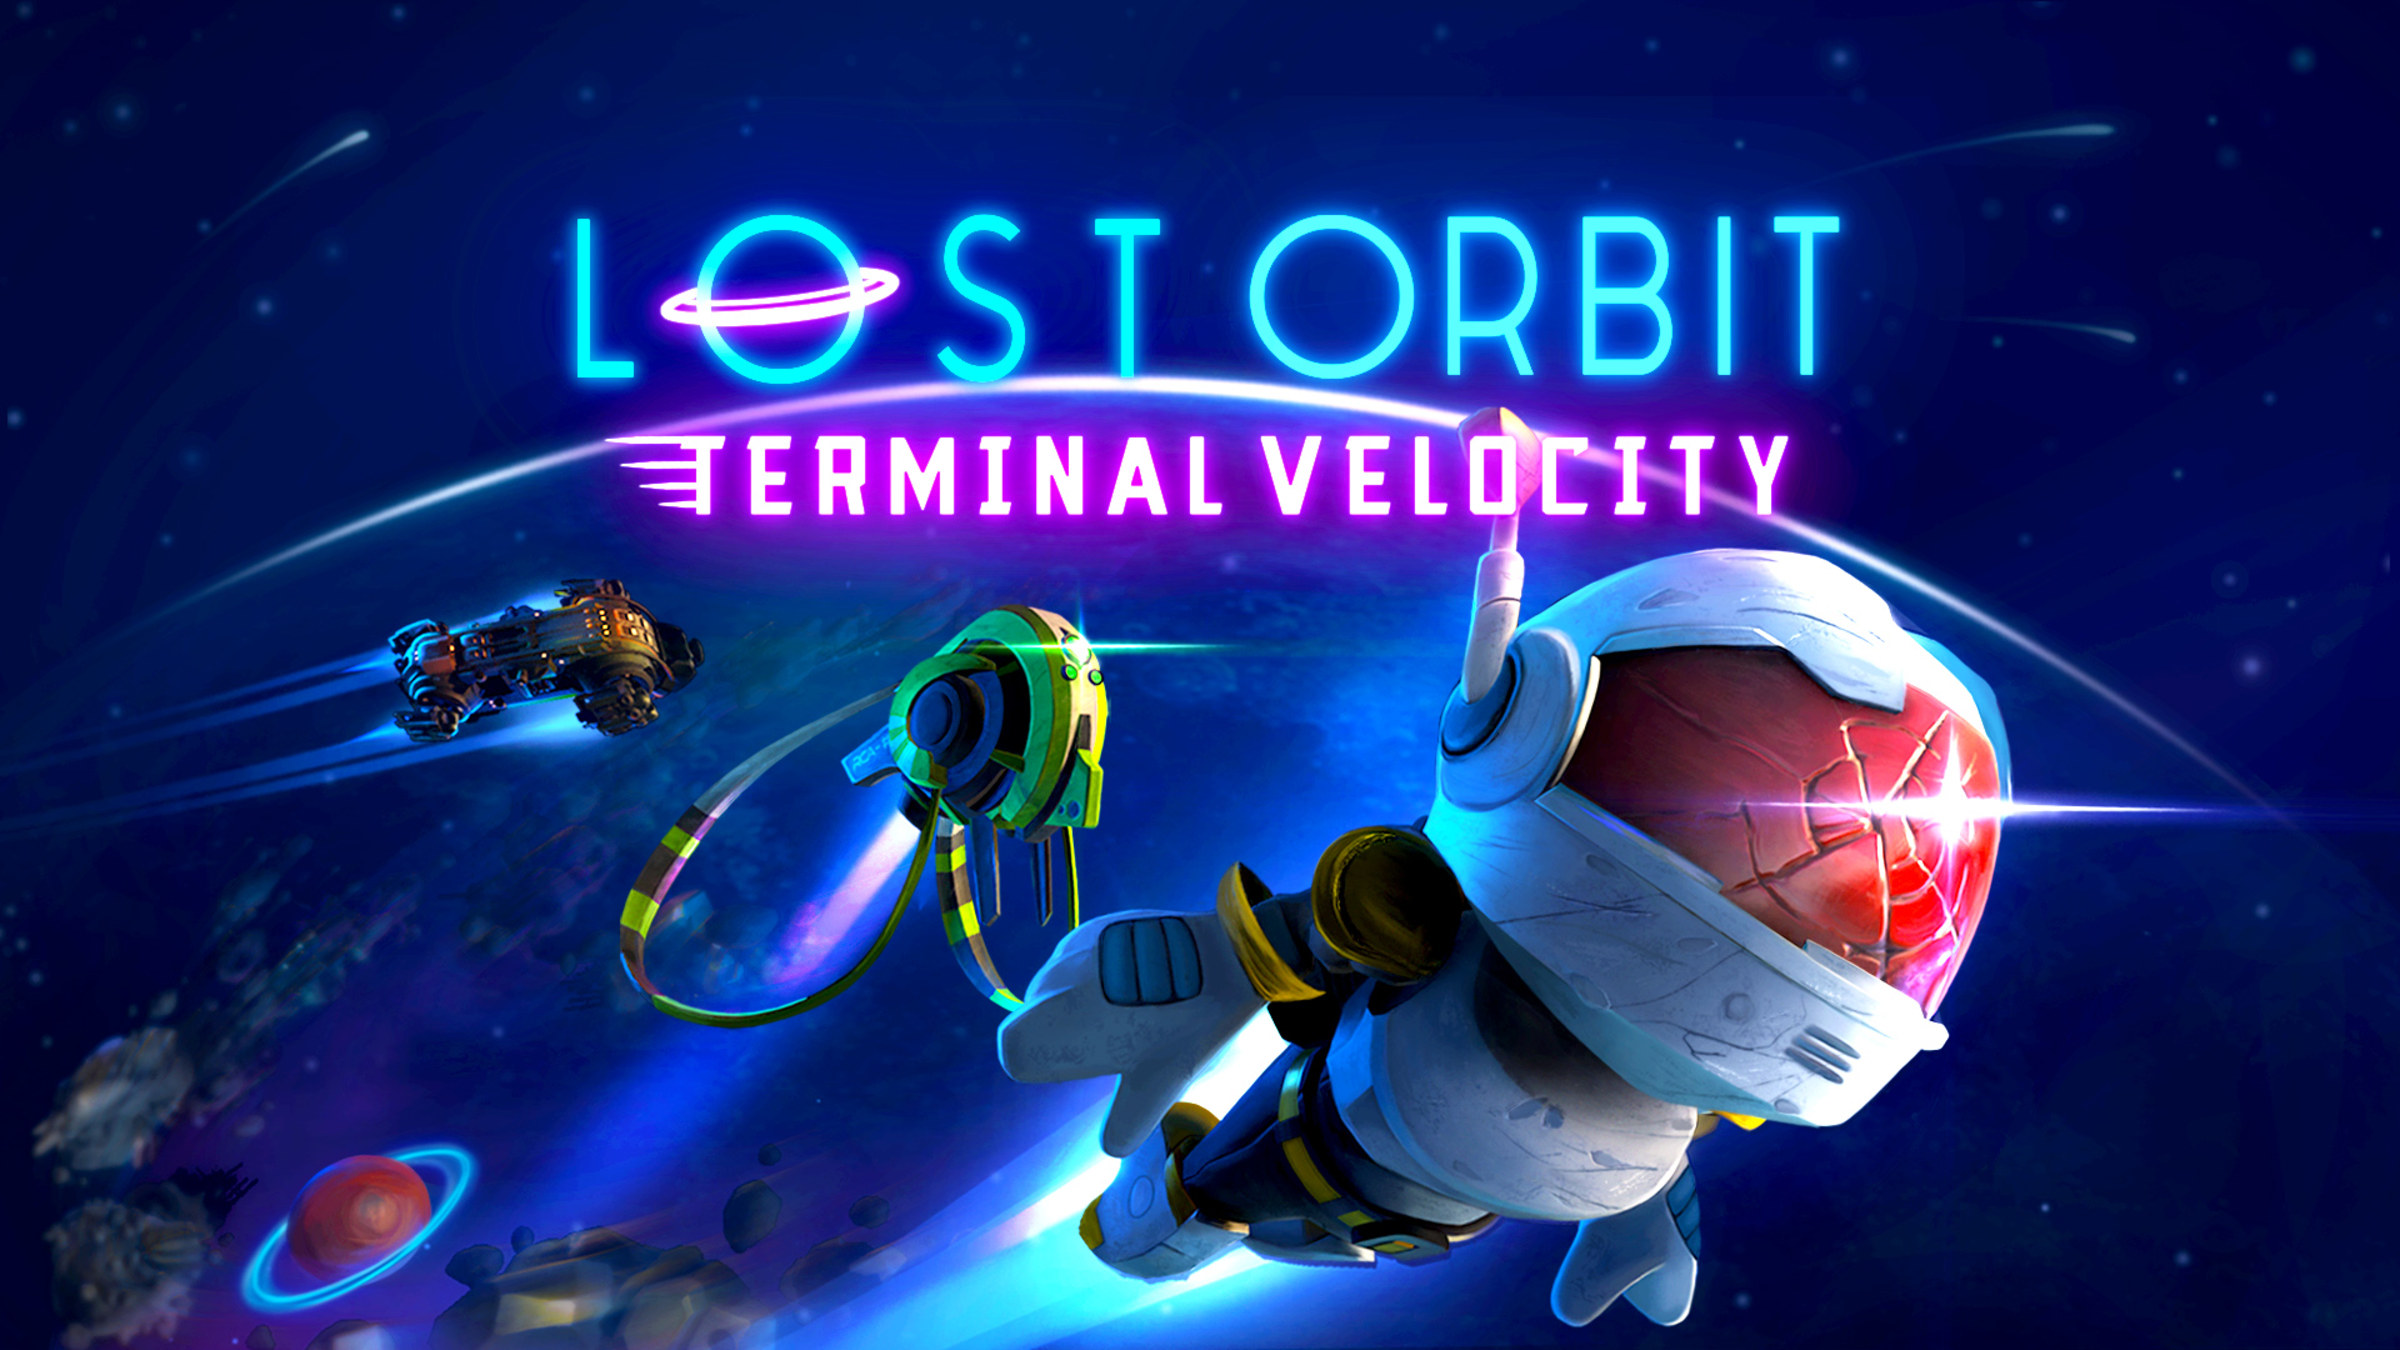 Terminal velocity. Lost Orbit: Terminal Velocity. Velocity in Orbit. Терминал велосити. Deep Orbit игра.